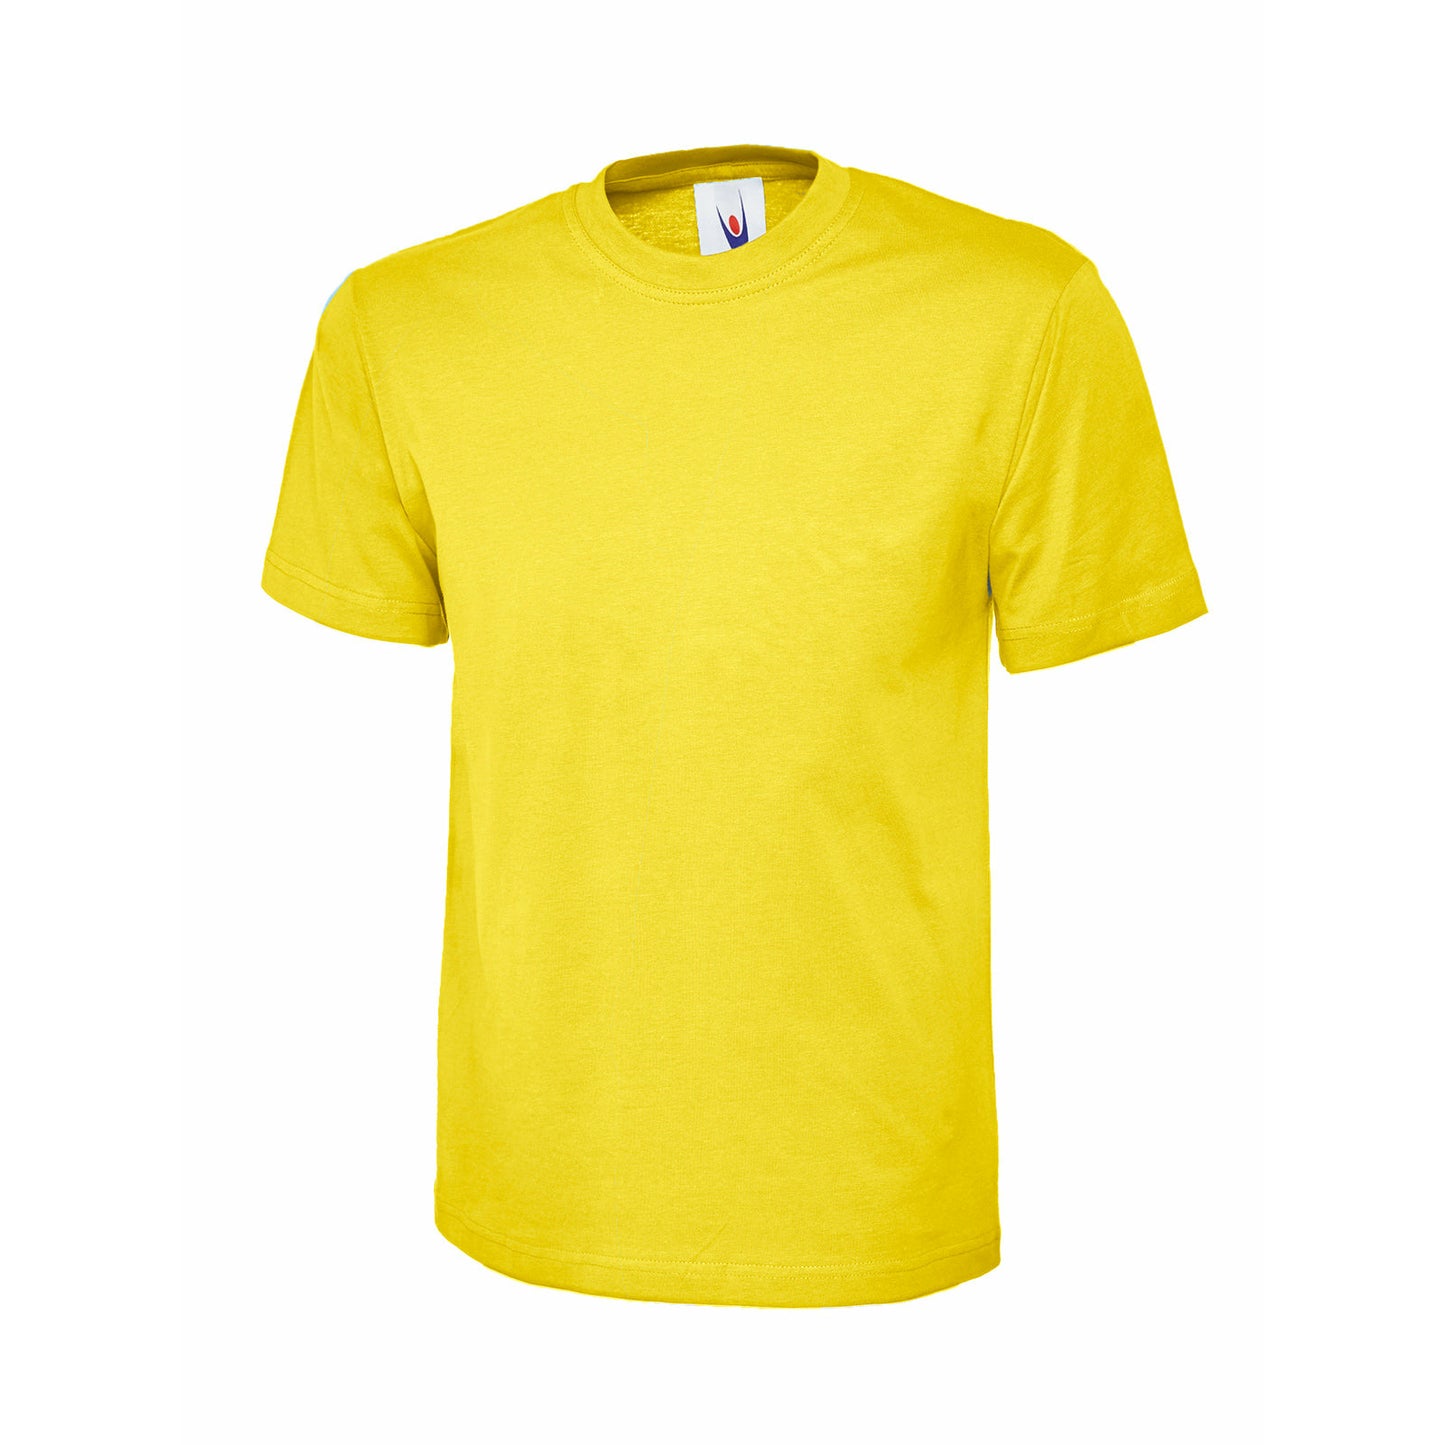 Childrens Classic T-shirt Yellow